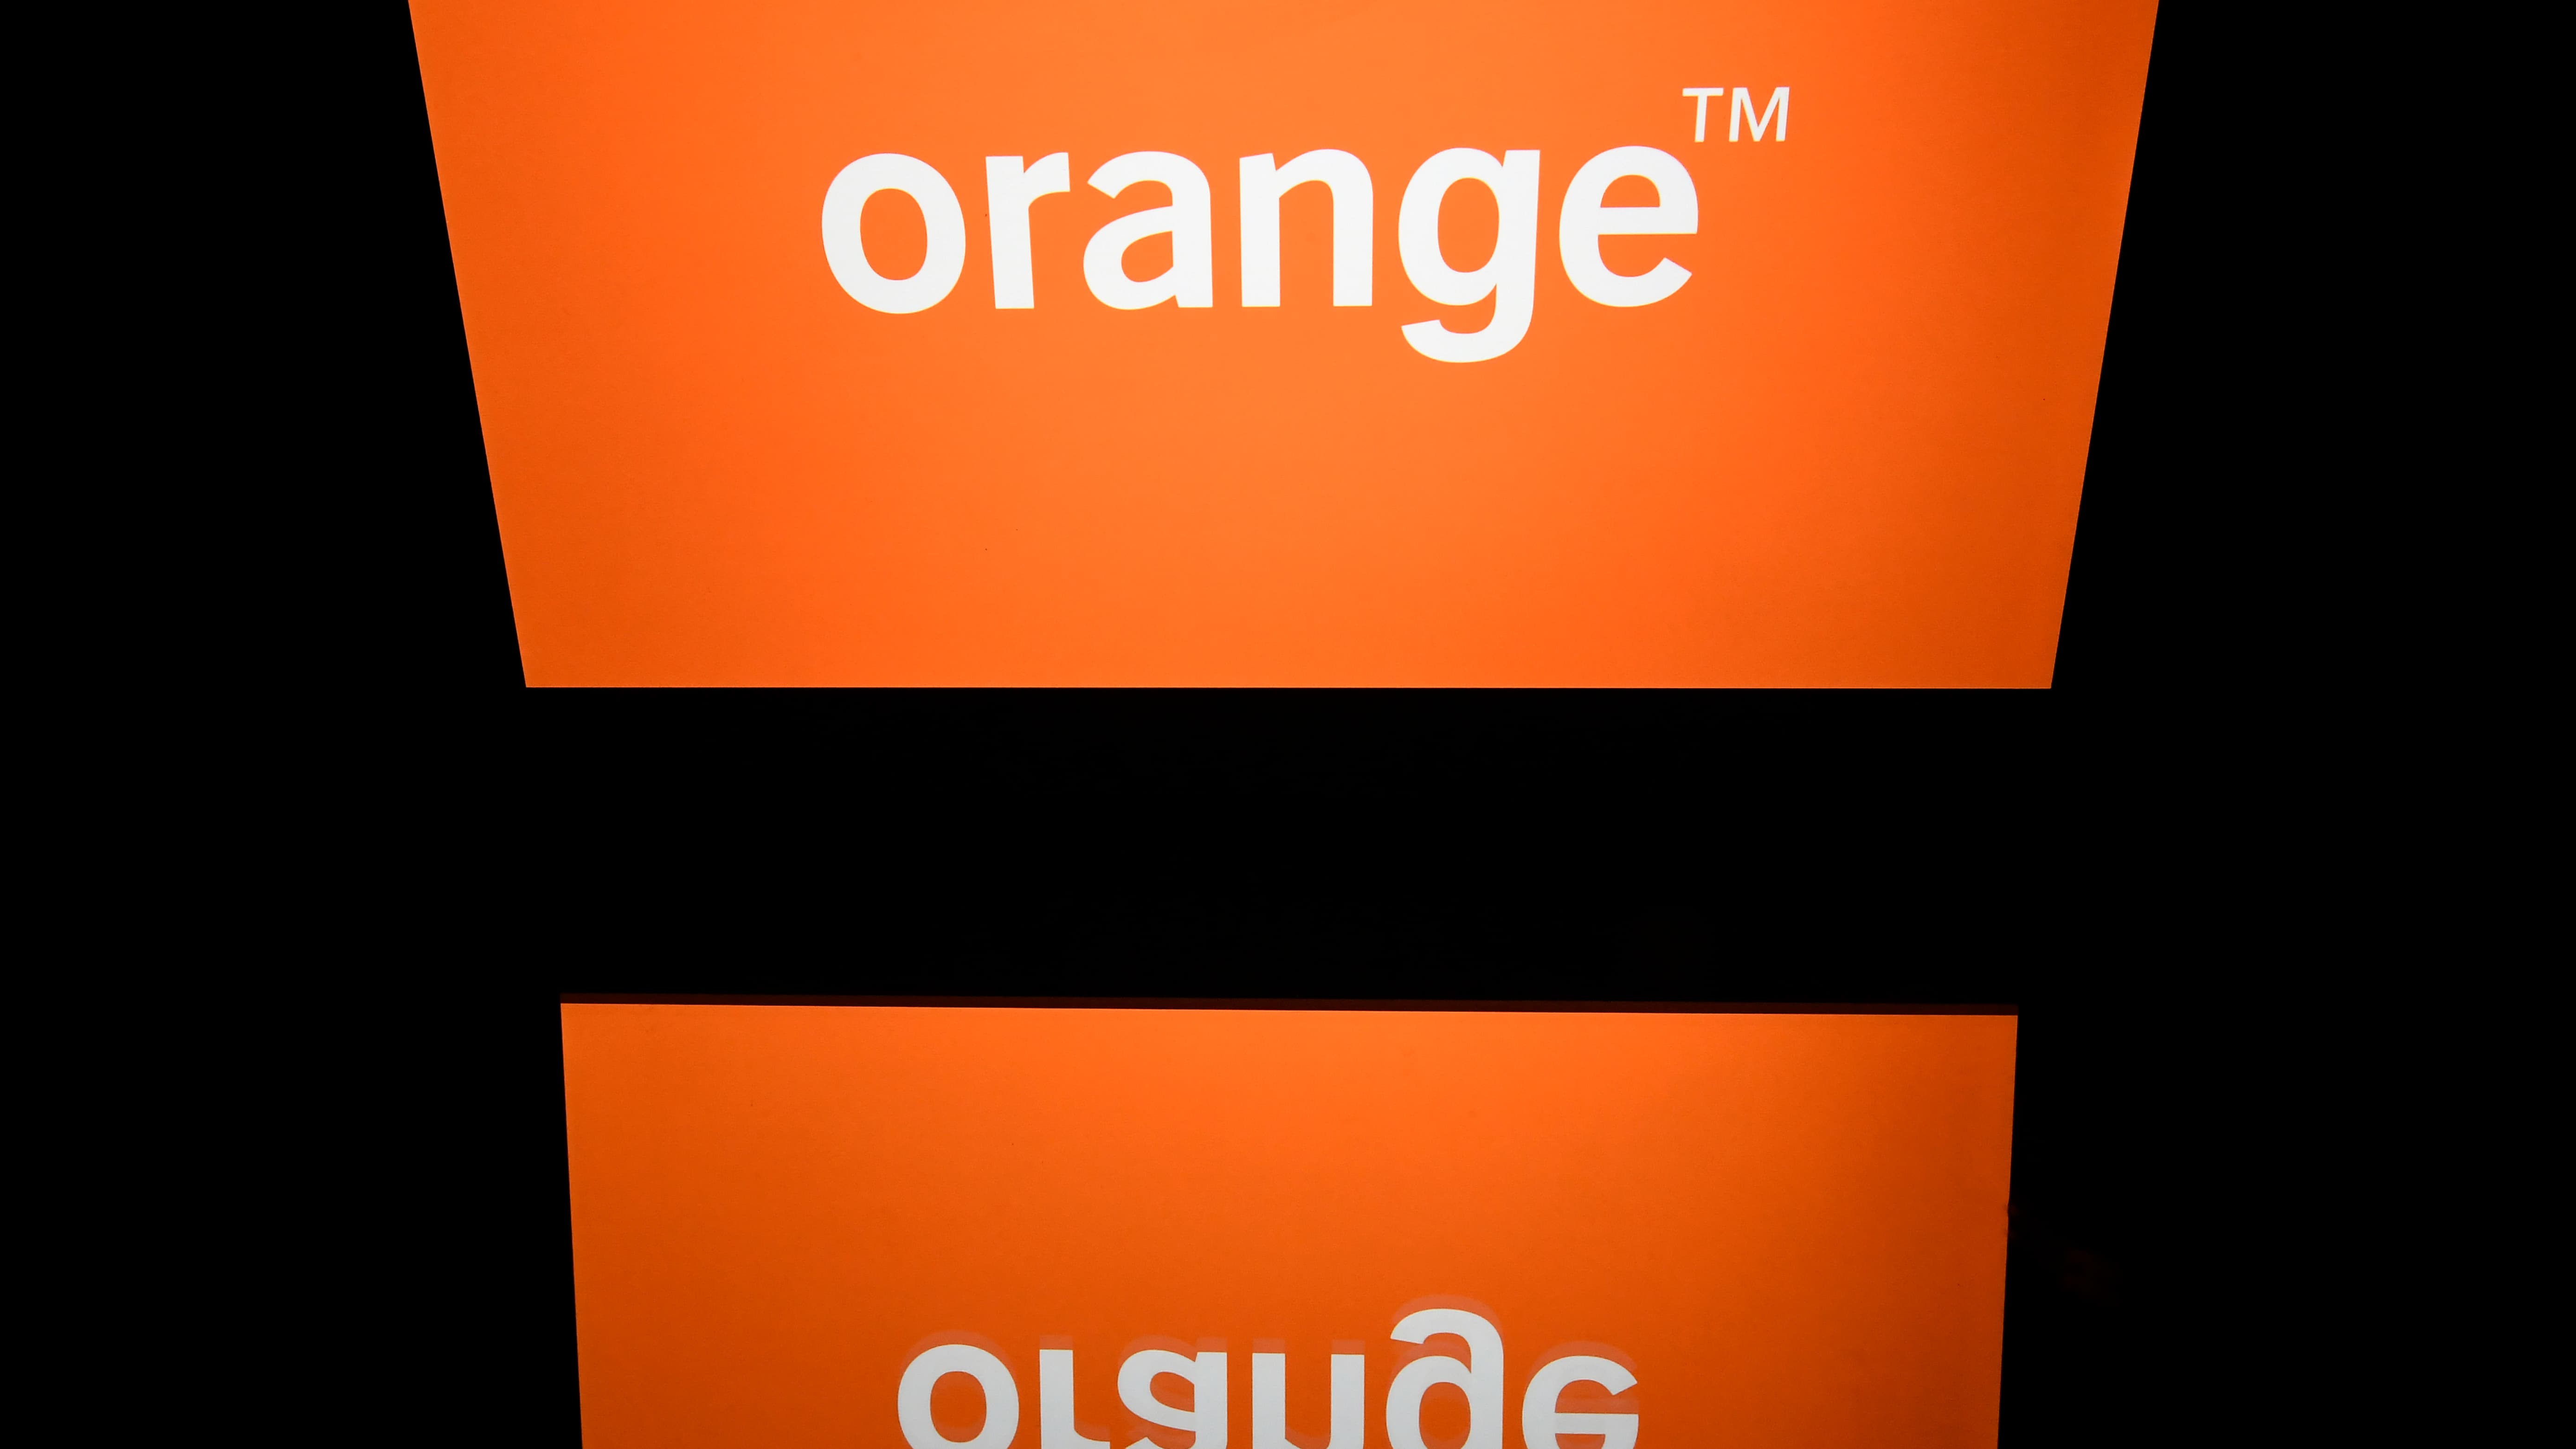 Déploiement de la fibre optique - Orange menacé de poursuites